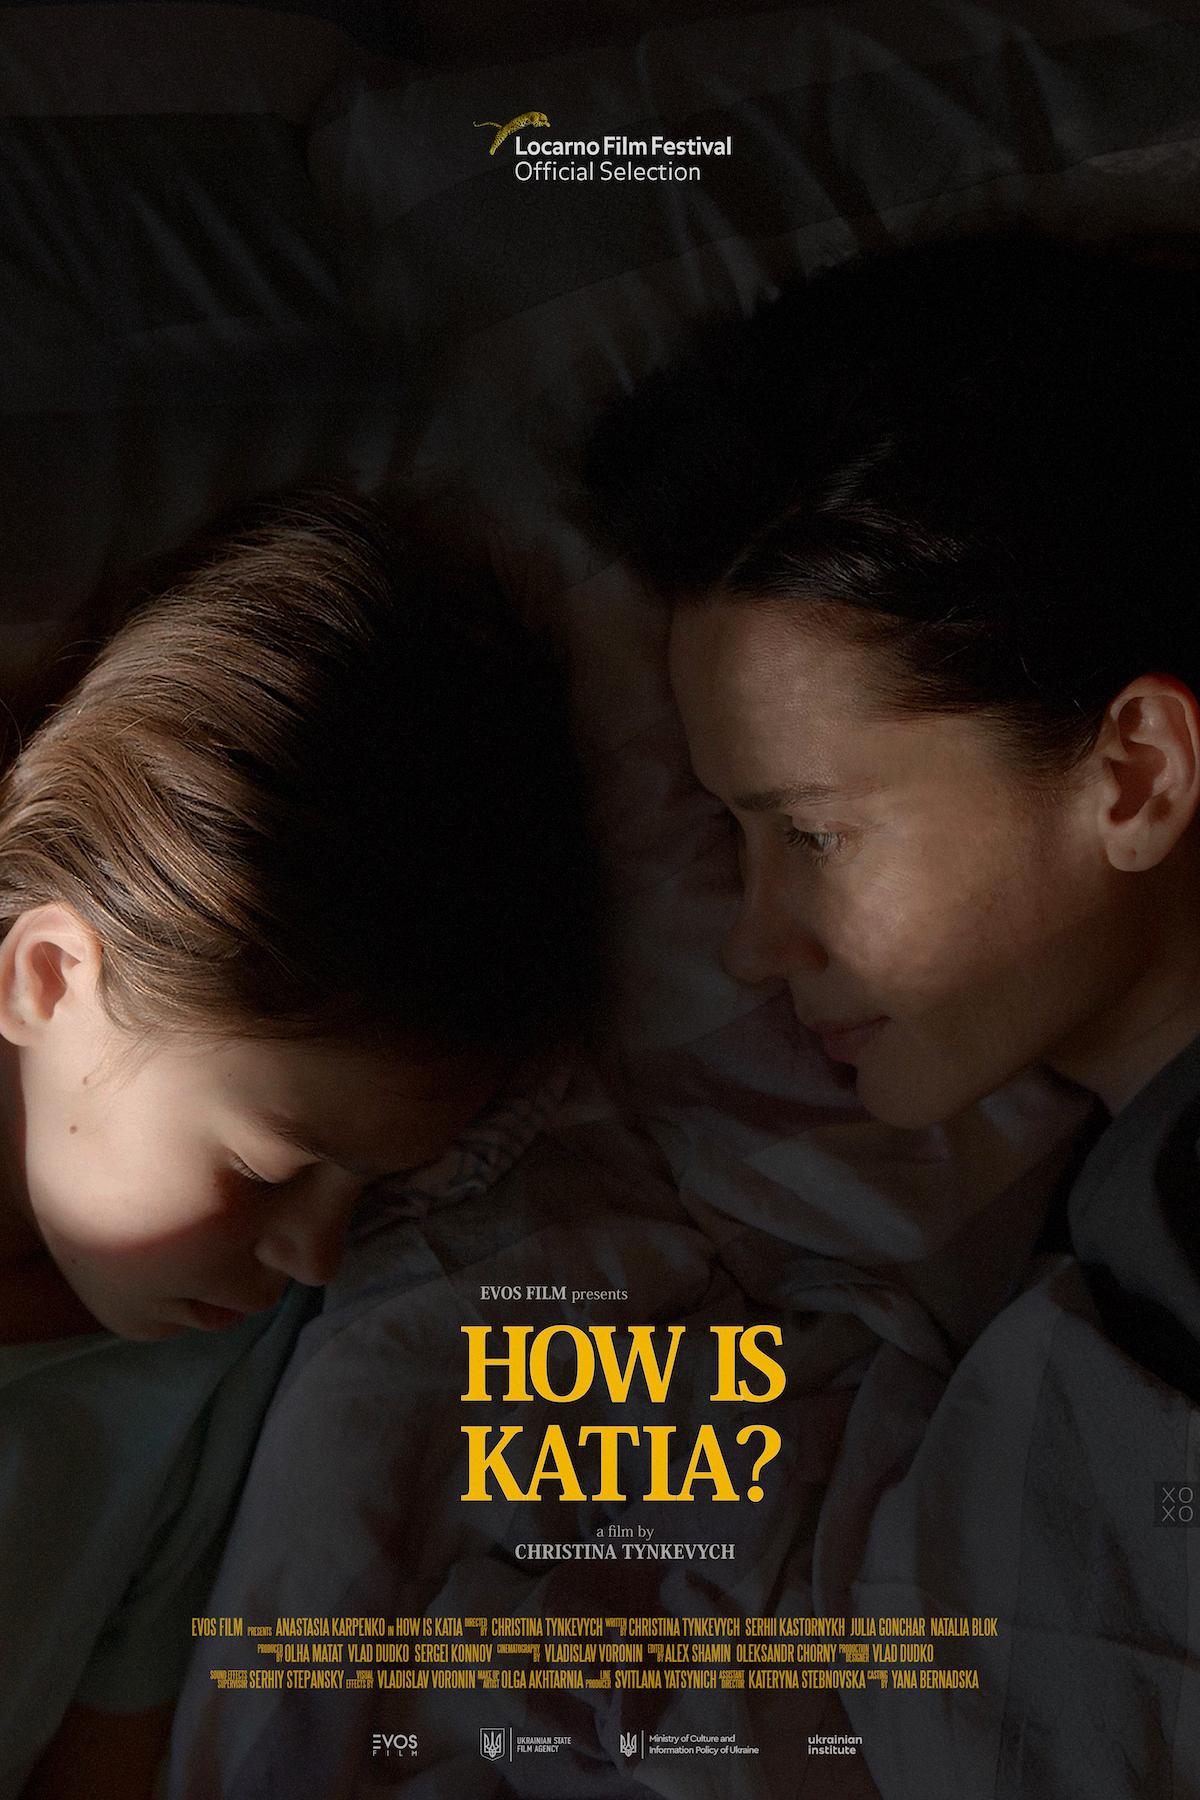 Постер к фильму "Как там Катя?"/ Фото - dzygamdb.com